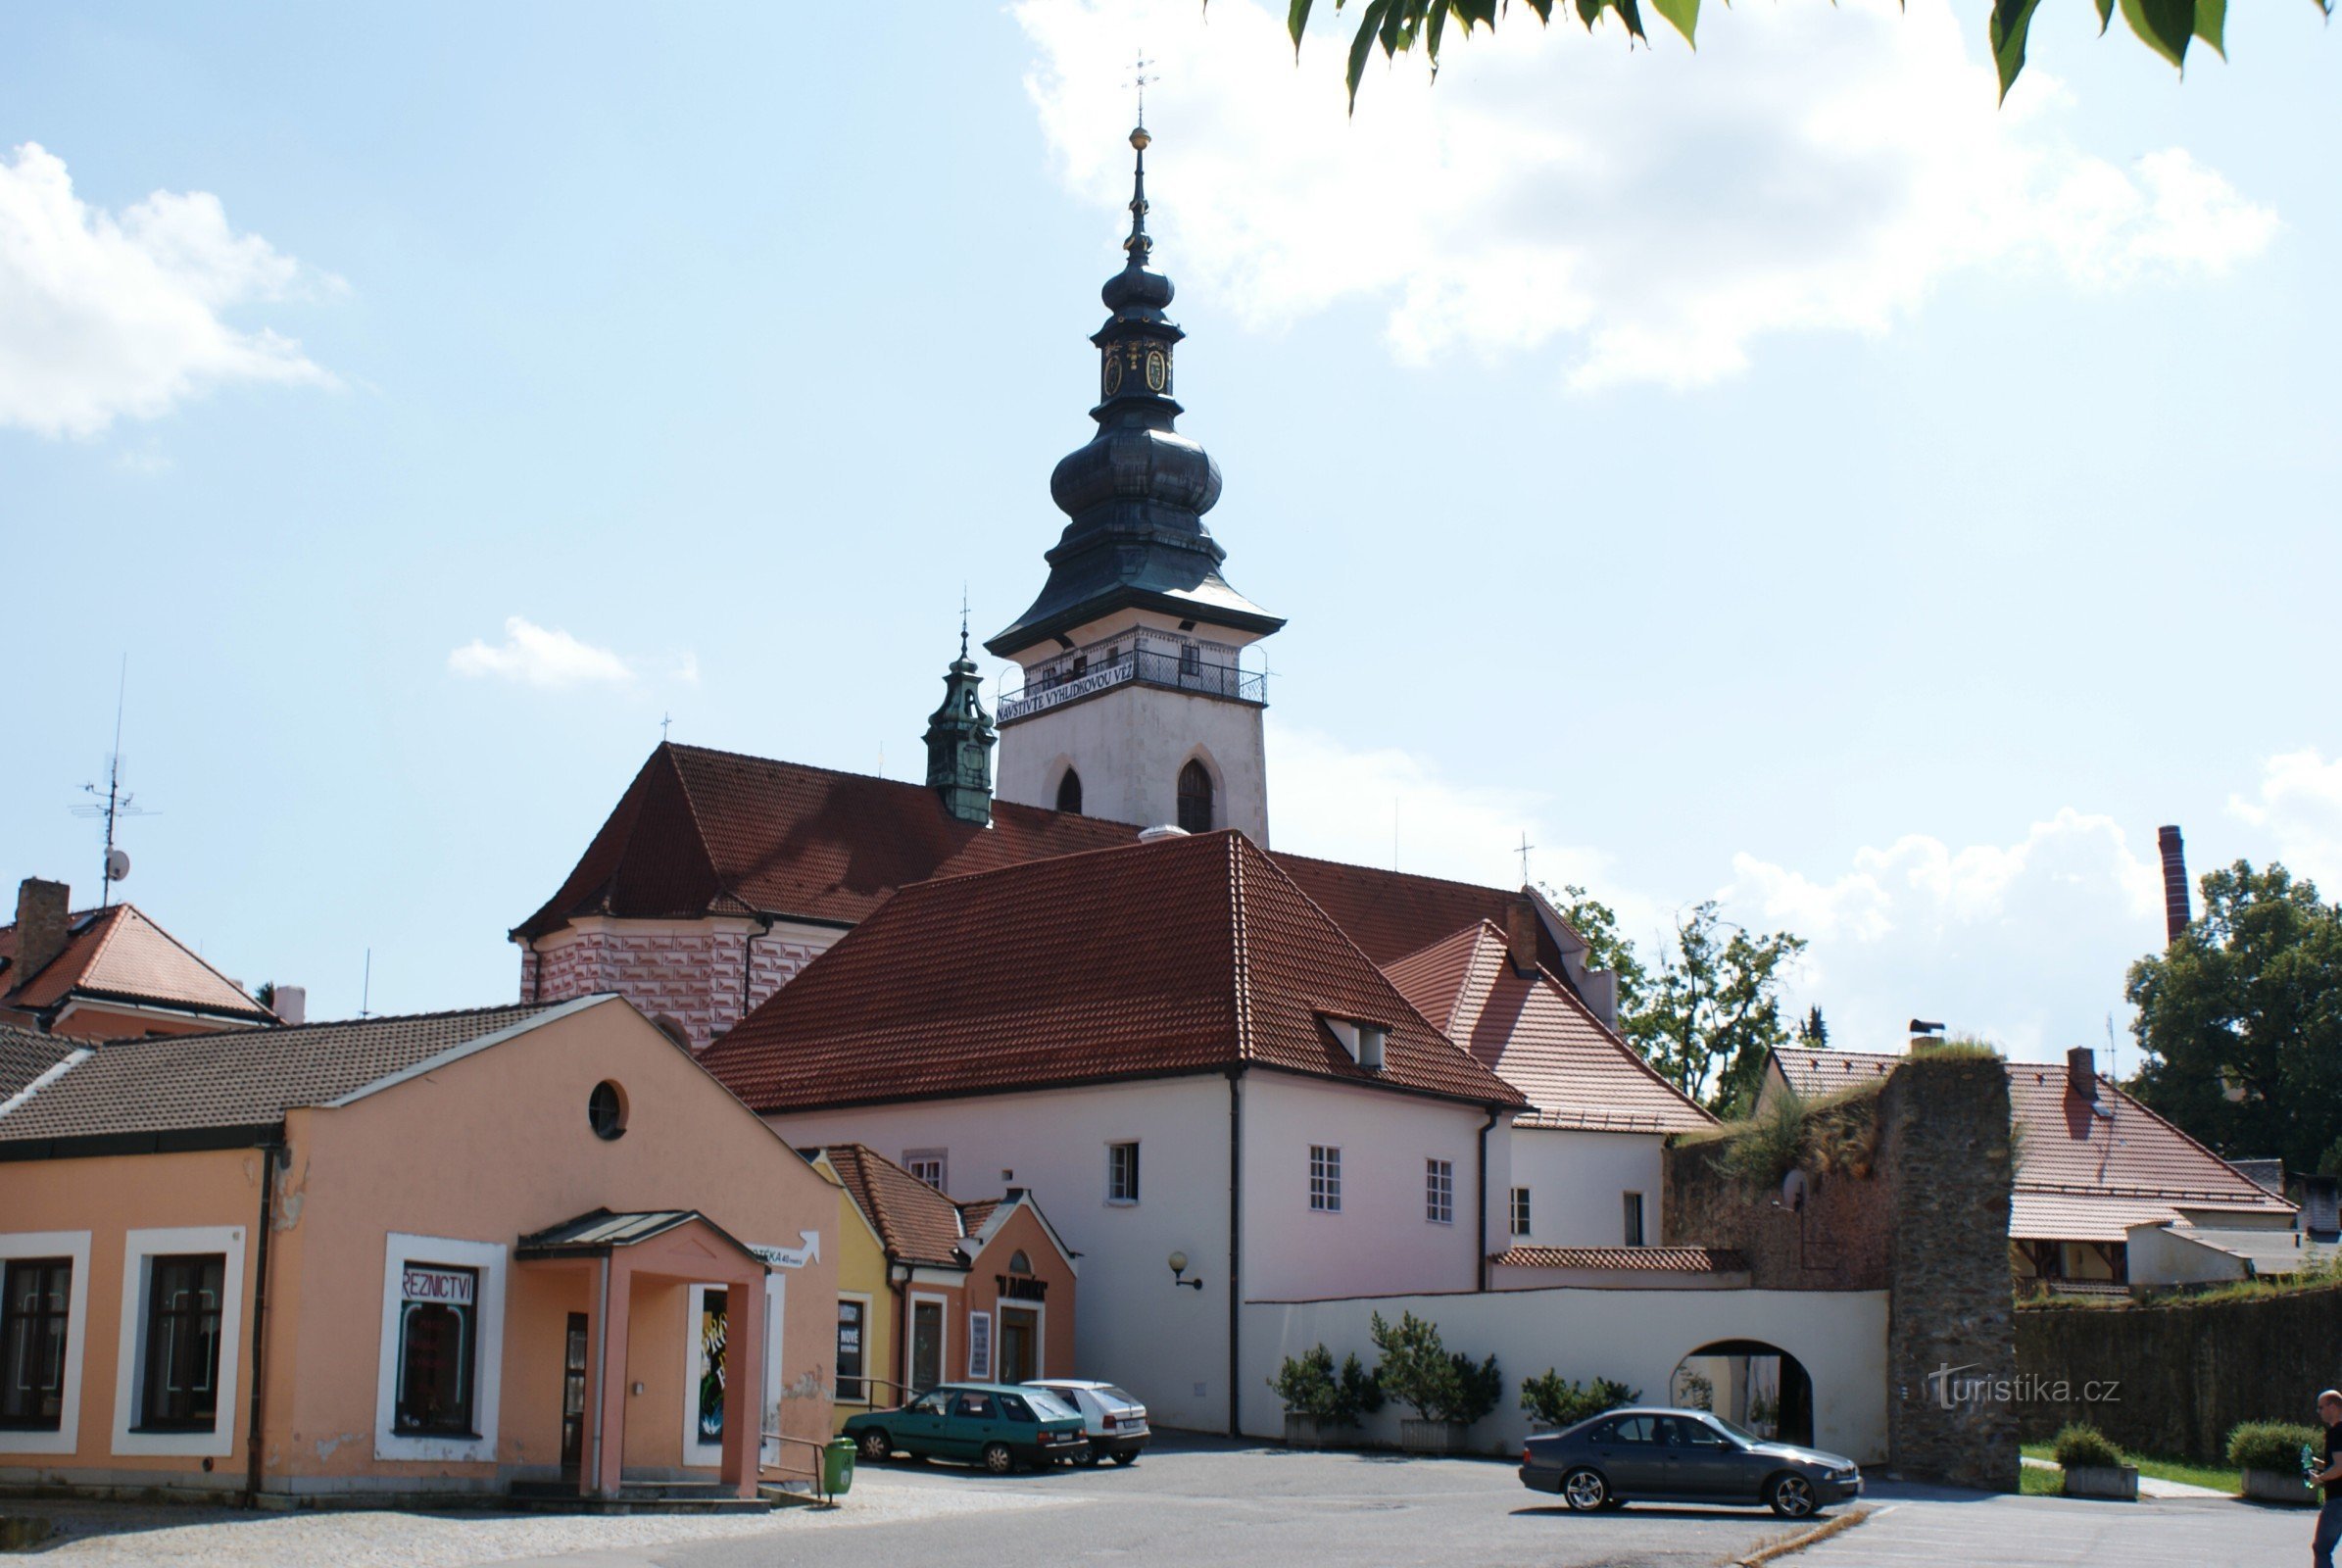 Pelhřimov – Basílica de S. Bartolomeu com uma torre de observação